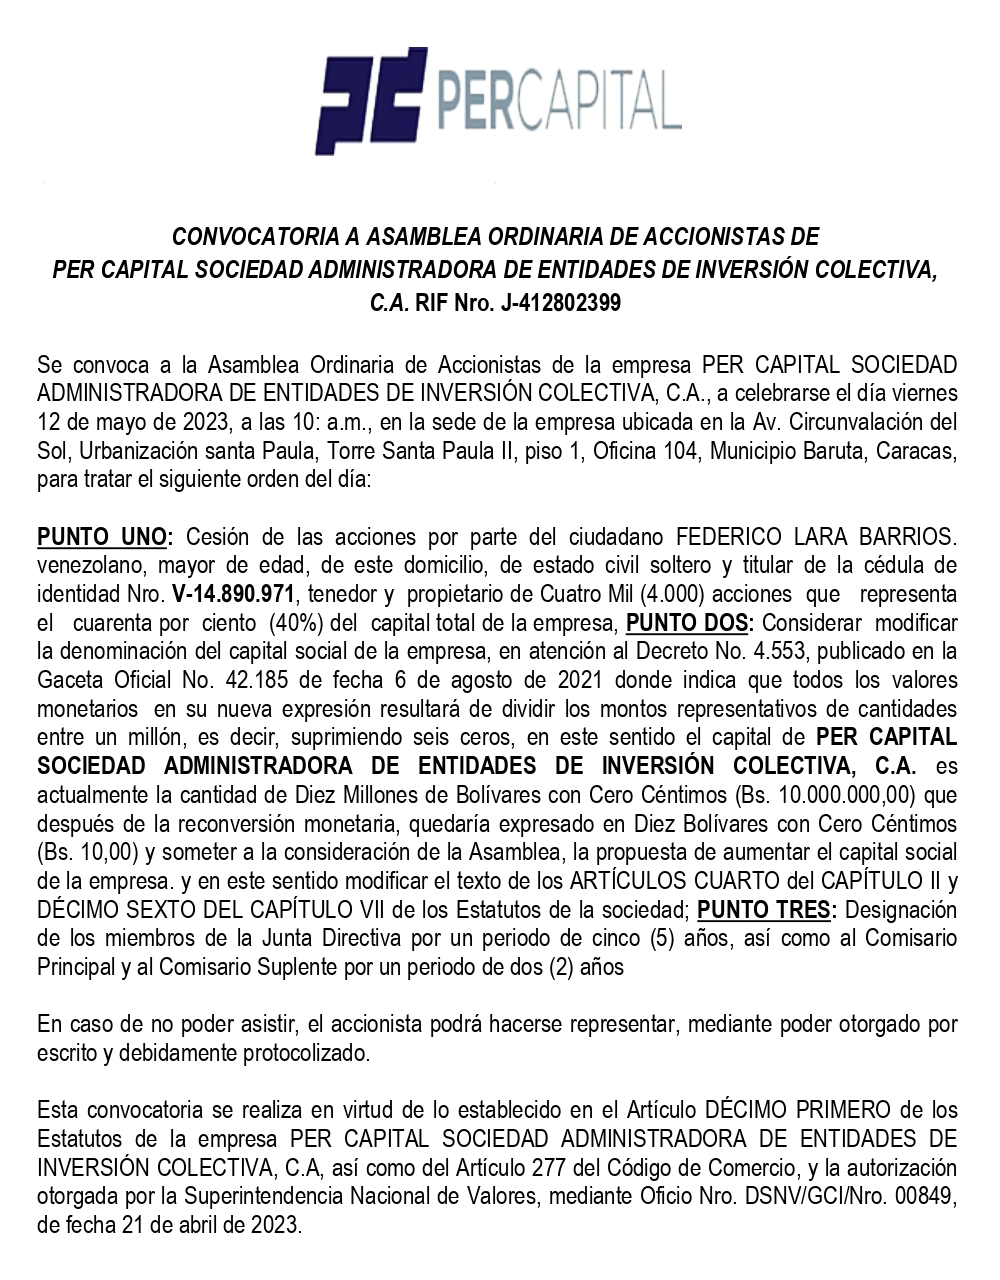 Convocatoria Asamblea Ordinaria de Accionistas | Per Capital Sociedad Administradora de Entidades de Inversión Colectiva, C.A.